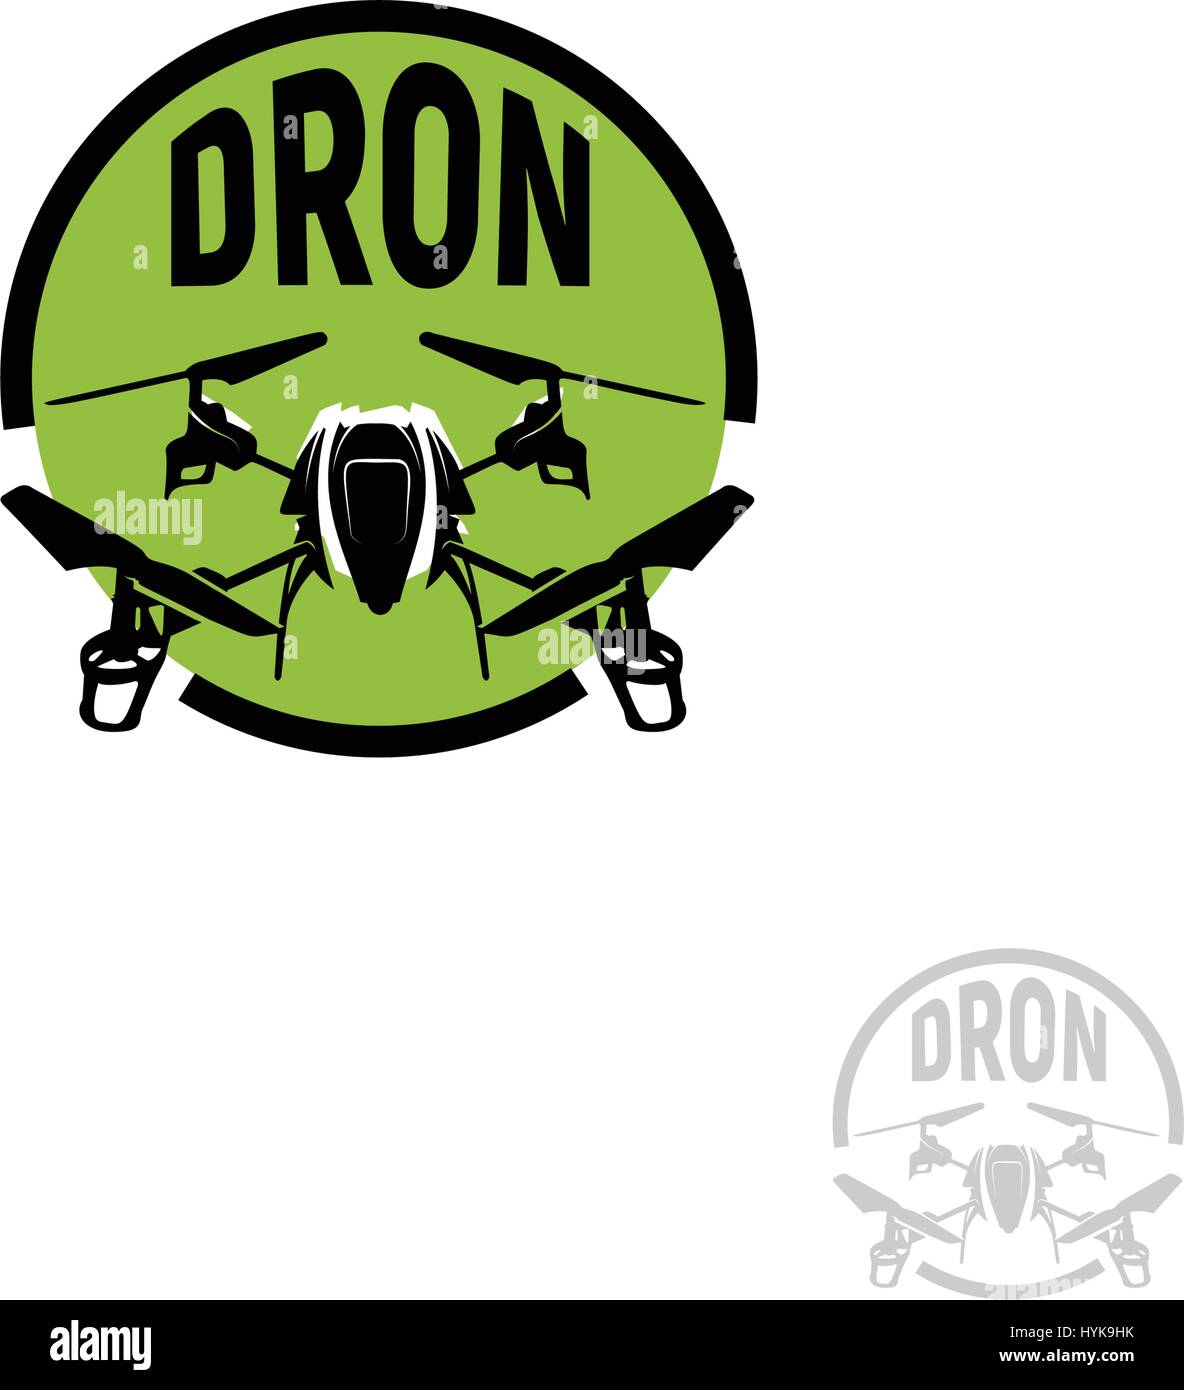 Isolato di forma tonda colore nero quadrocopter in cerchio verde logo su sfondo bianco, drone logotipo, rc drone illustrazione vettoriale Illustrazione Vettoriale